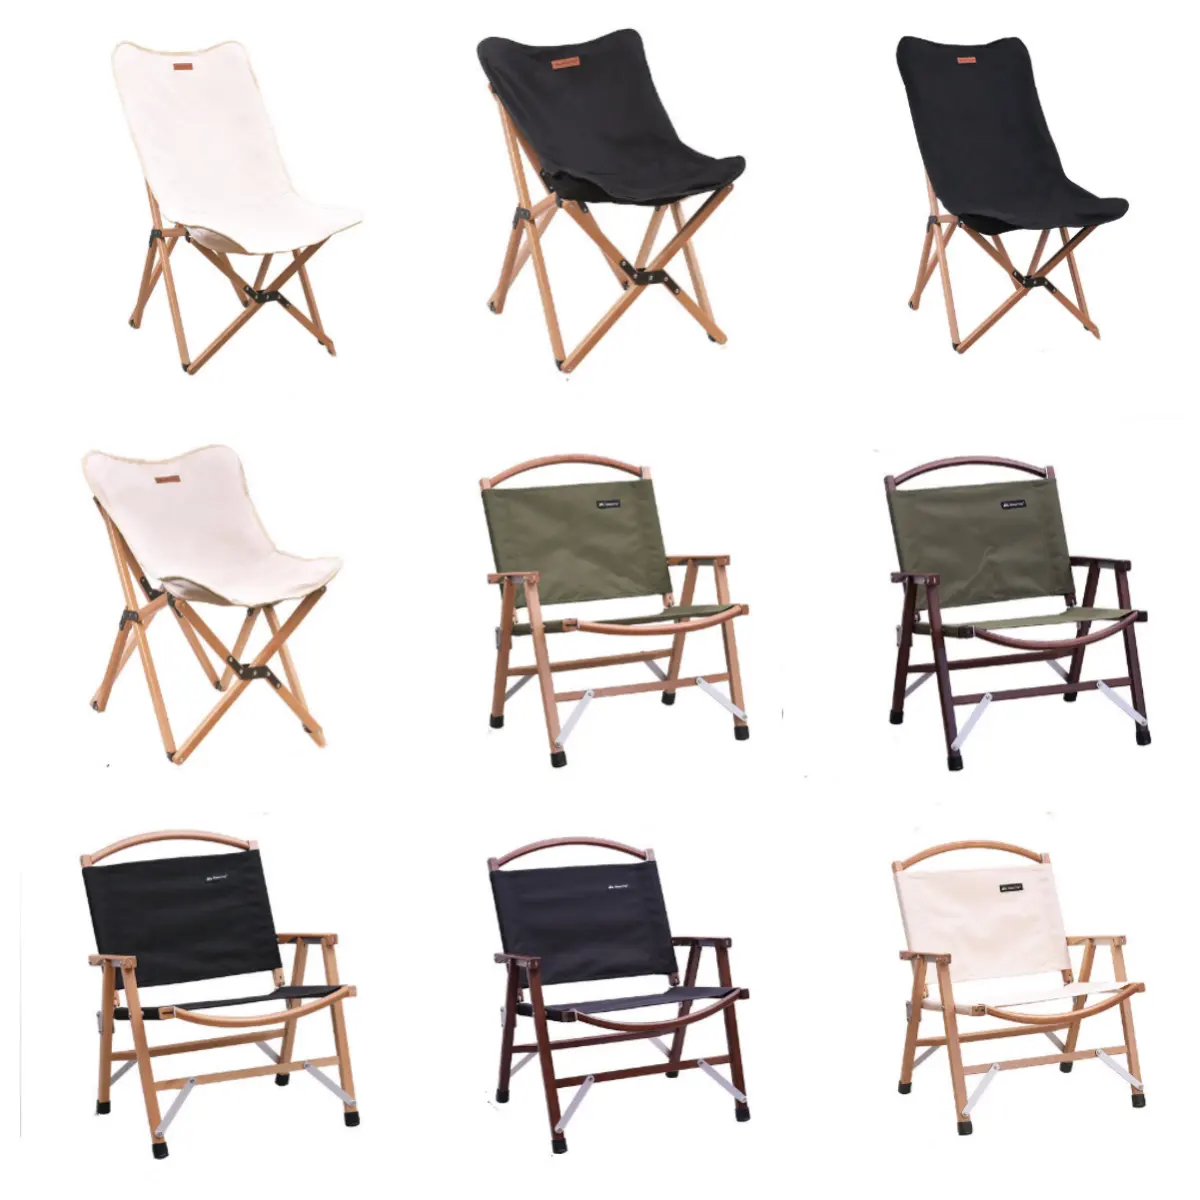 Chaise pliante en aluminium bon marché de zone d'usine pour le sac à dos extérieur de meubles en métal de loisirs de marque de camping de plage